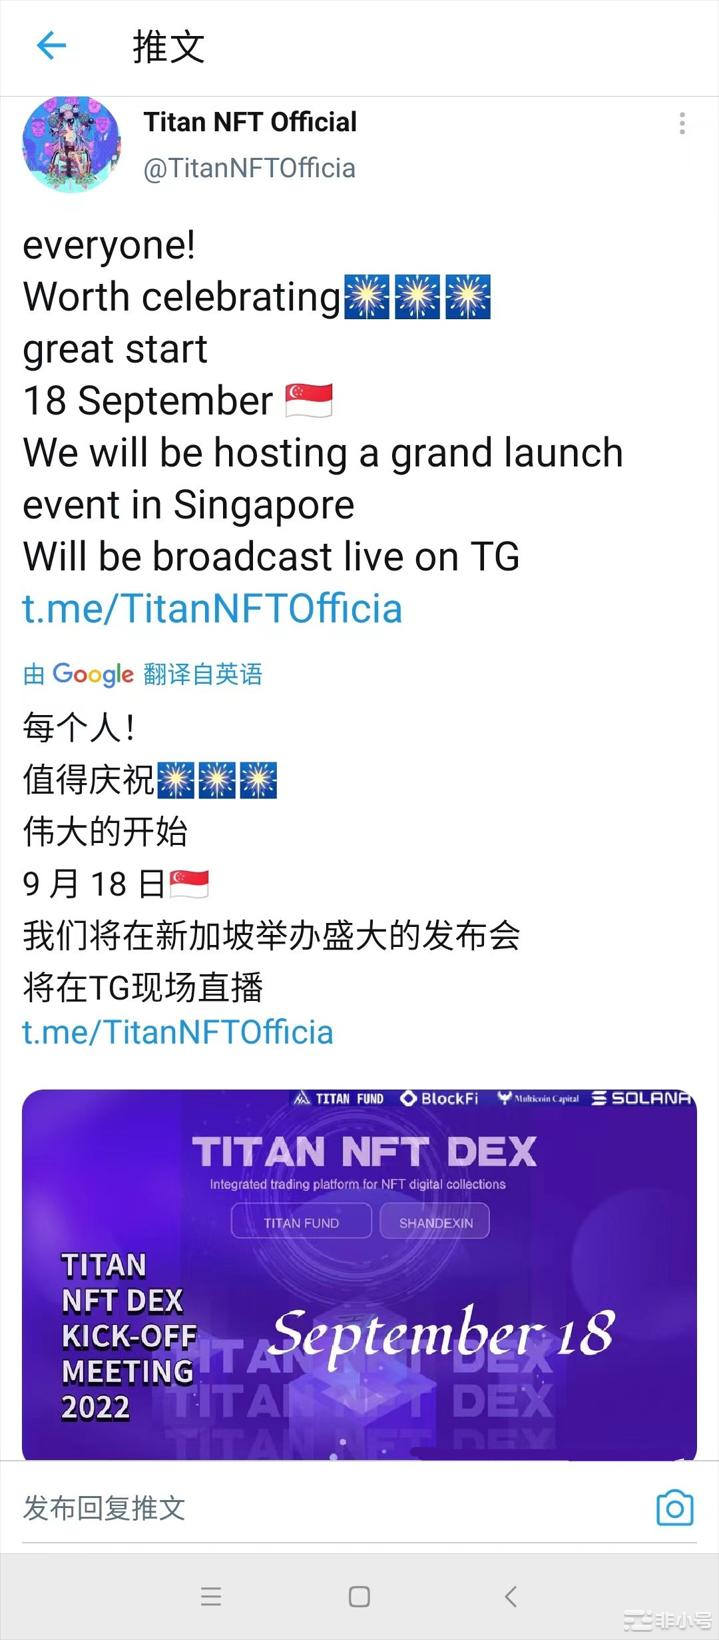 TTTANNFT交易所启动大会将于18日在当地举行